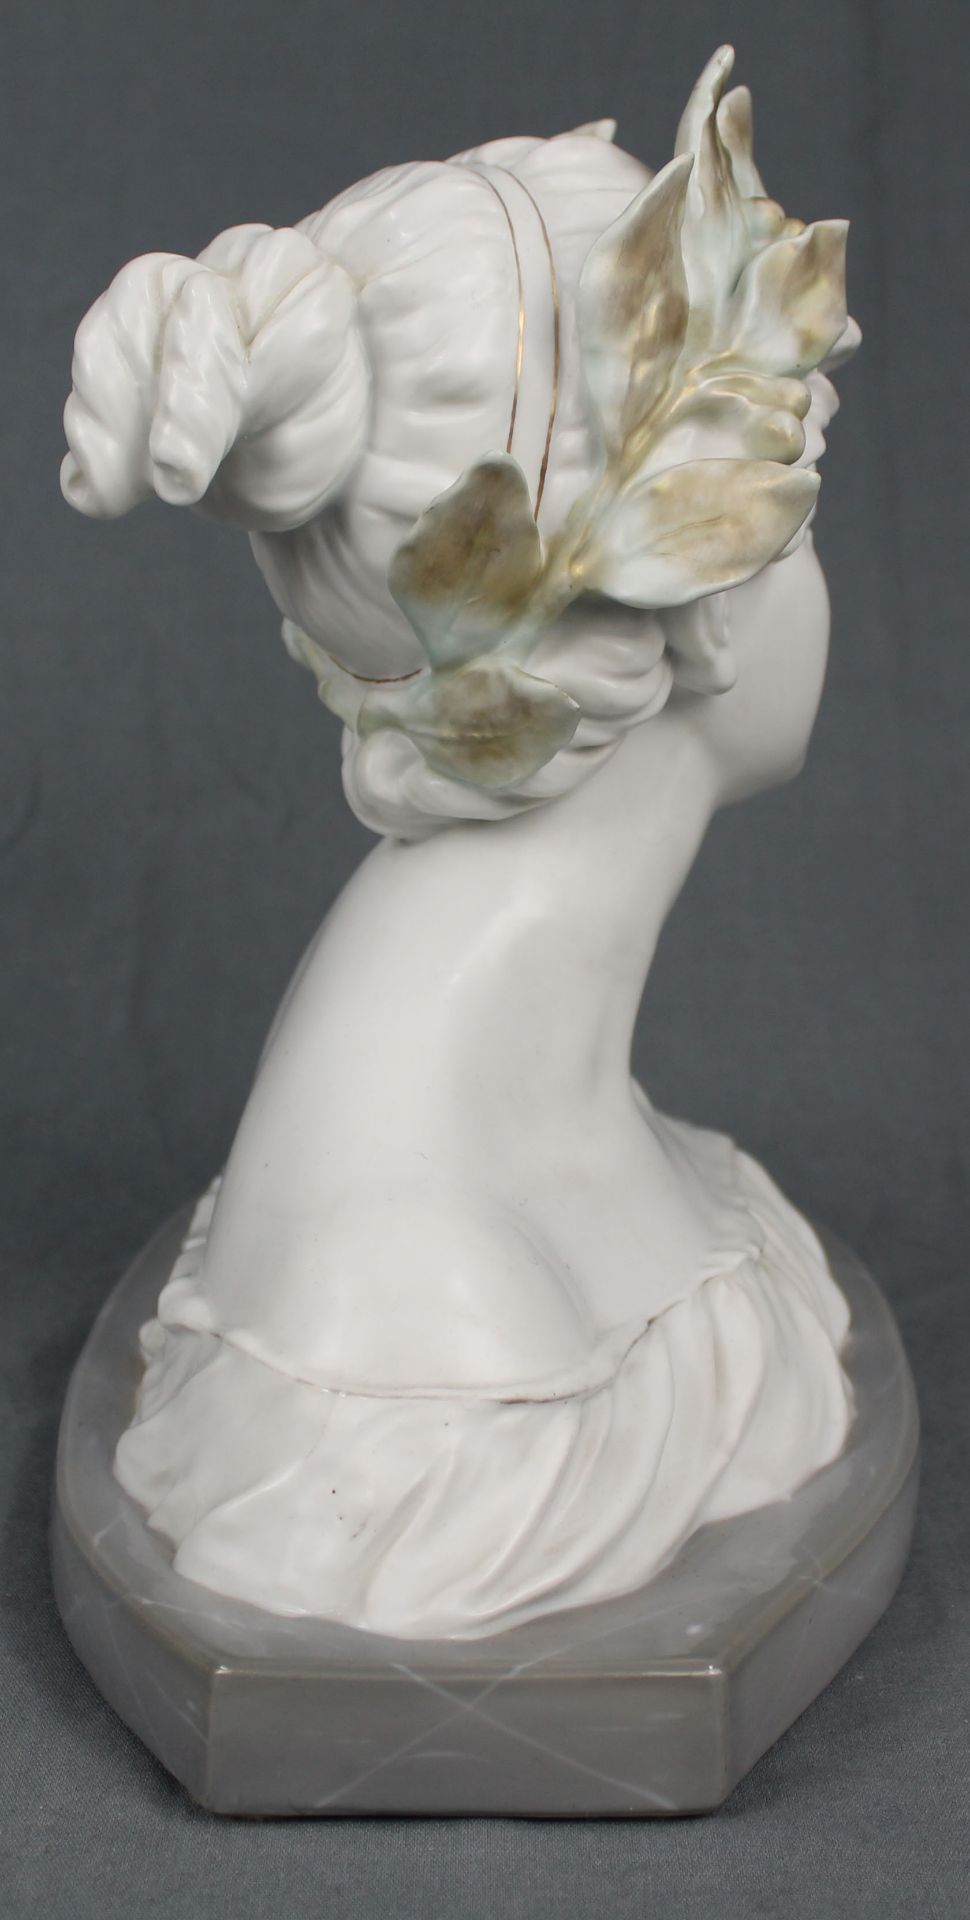 Porcelain bust of Fauna. Art Nouveau.26 cm high.Porzellan Büste der Fauna. Jugendstil.26 cm hoch. - Bild 4 aus 6